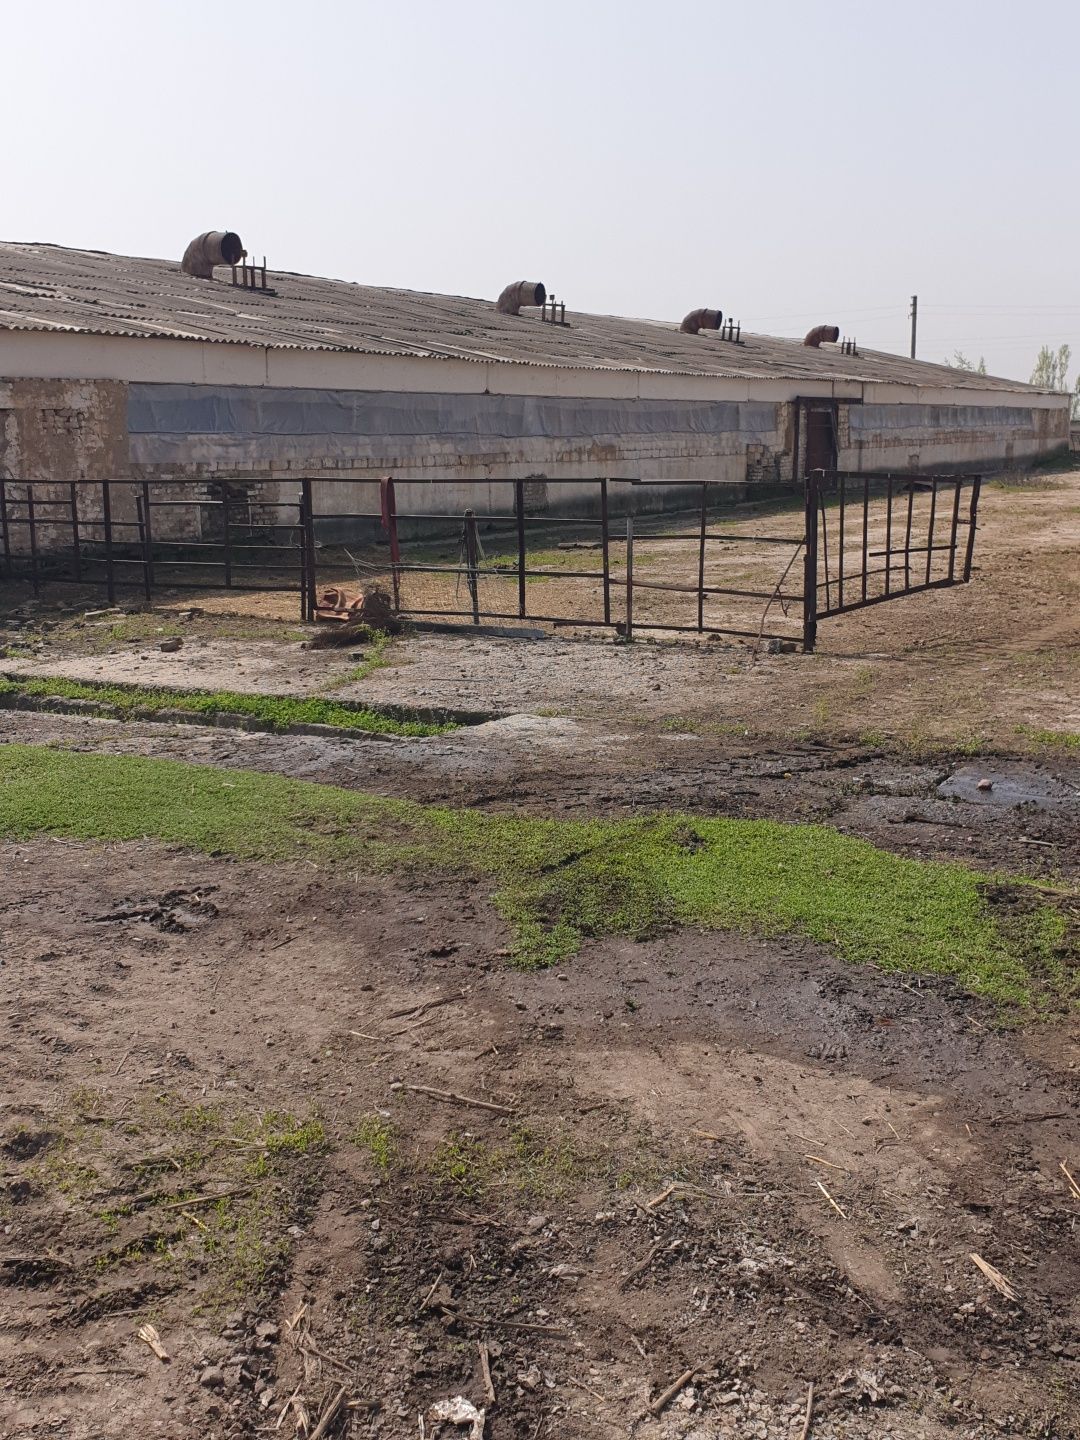 Продаётся ферма для скота 6 гектаров кадастр имеется Ташкент область у